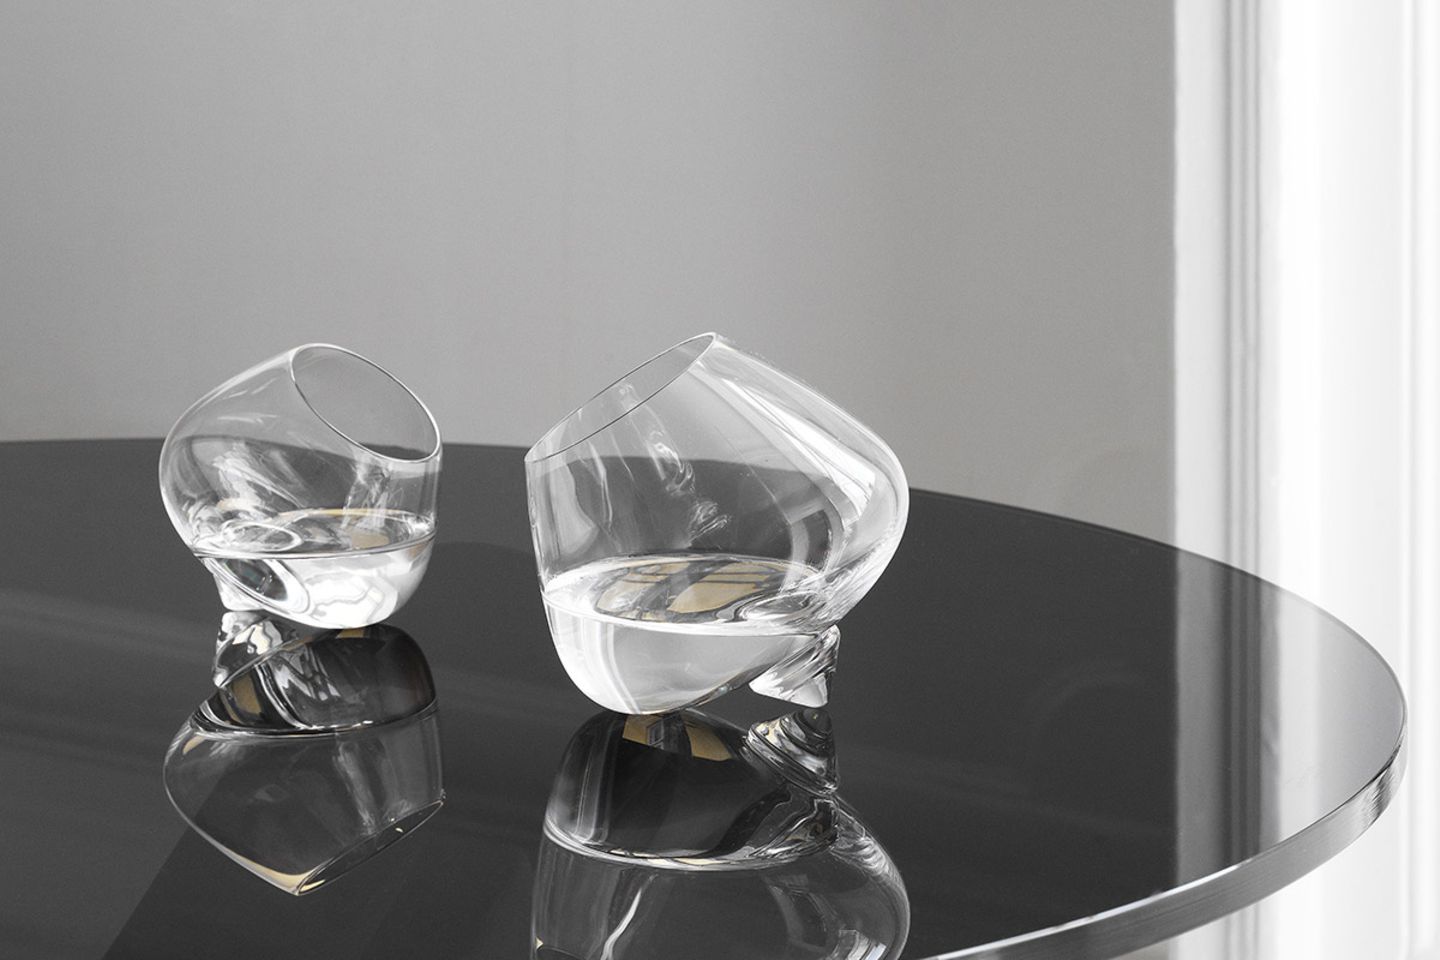 Schräg auf dem Tisch aufliegende Likör- und Cognacgläser von Normann Copenhagen